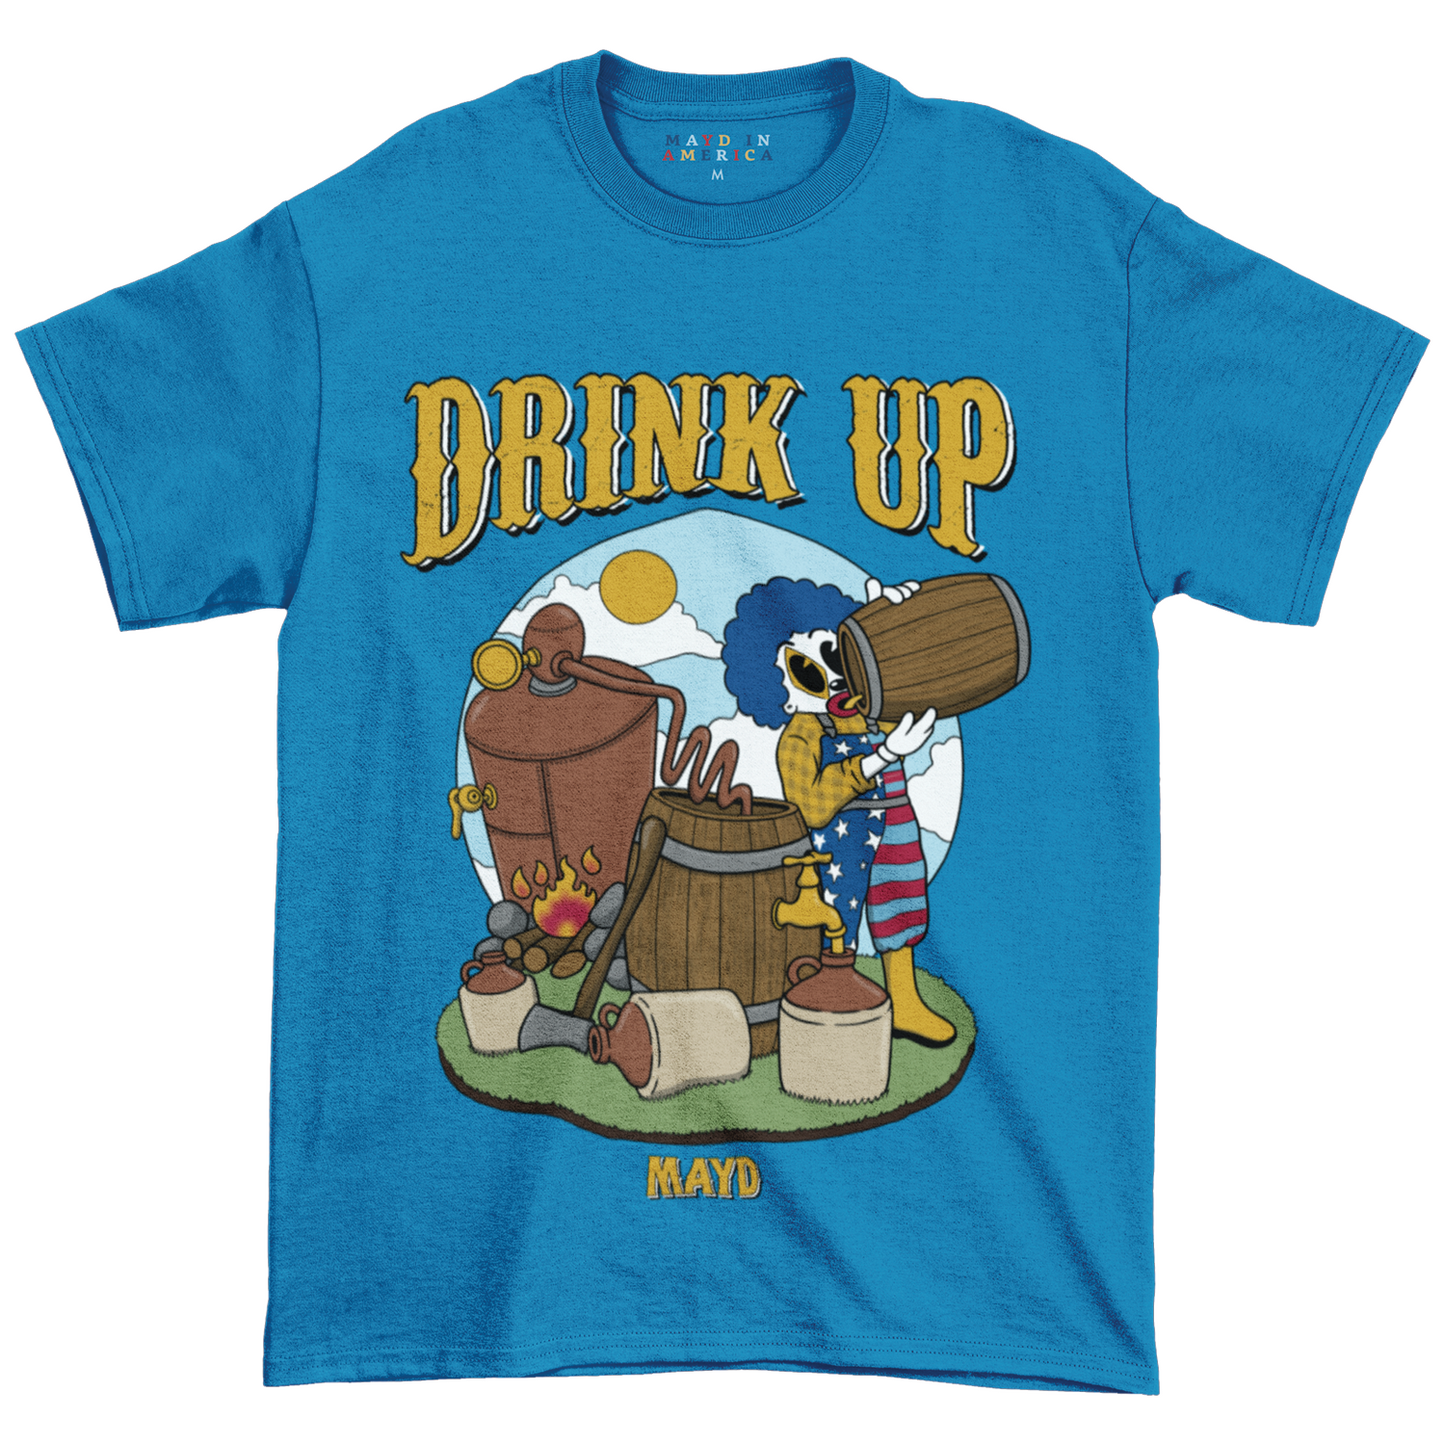 MAYD in America Drink Up Tshirt